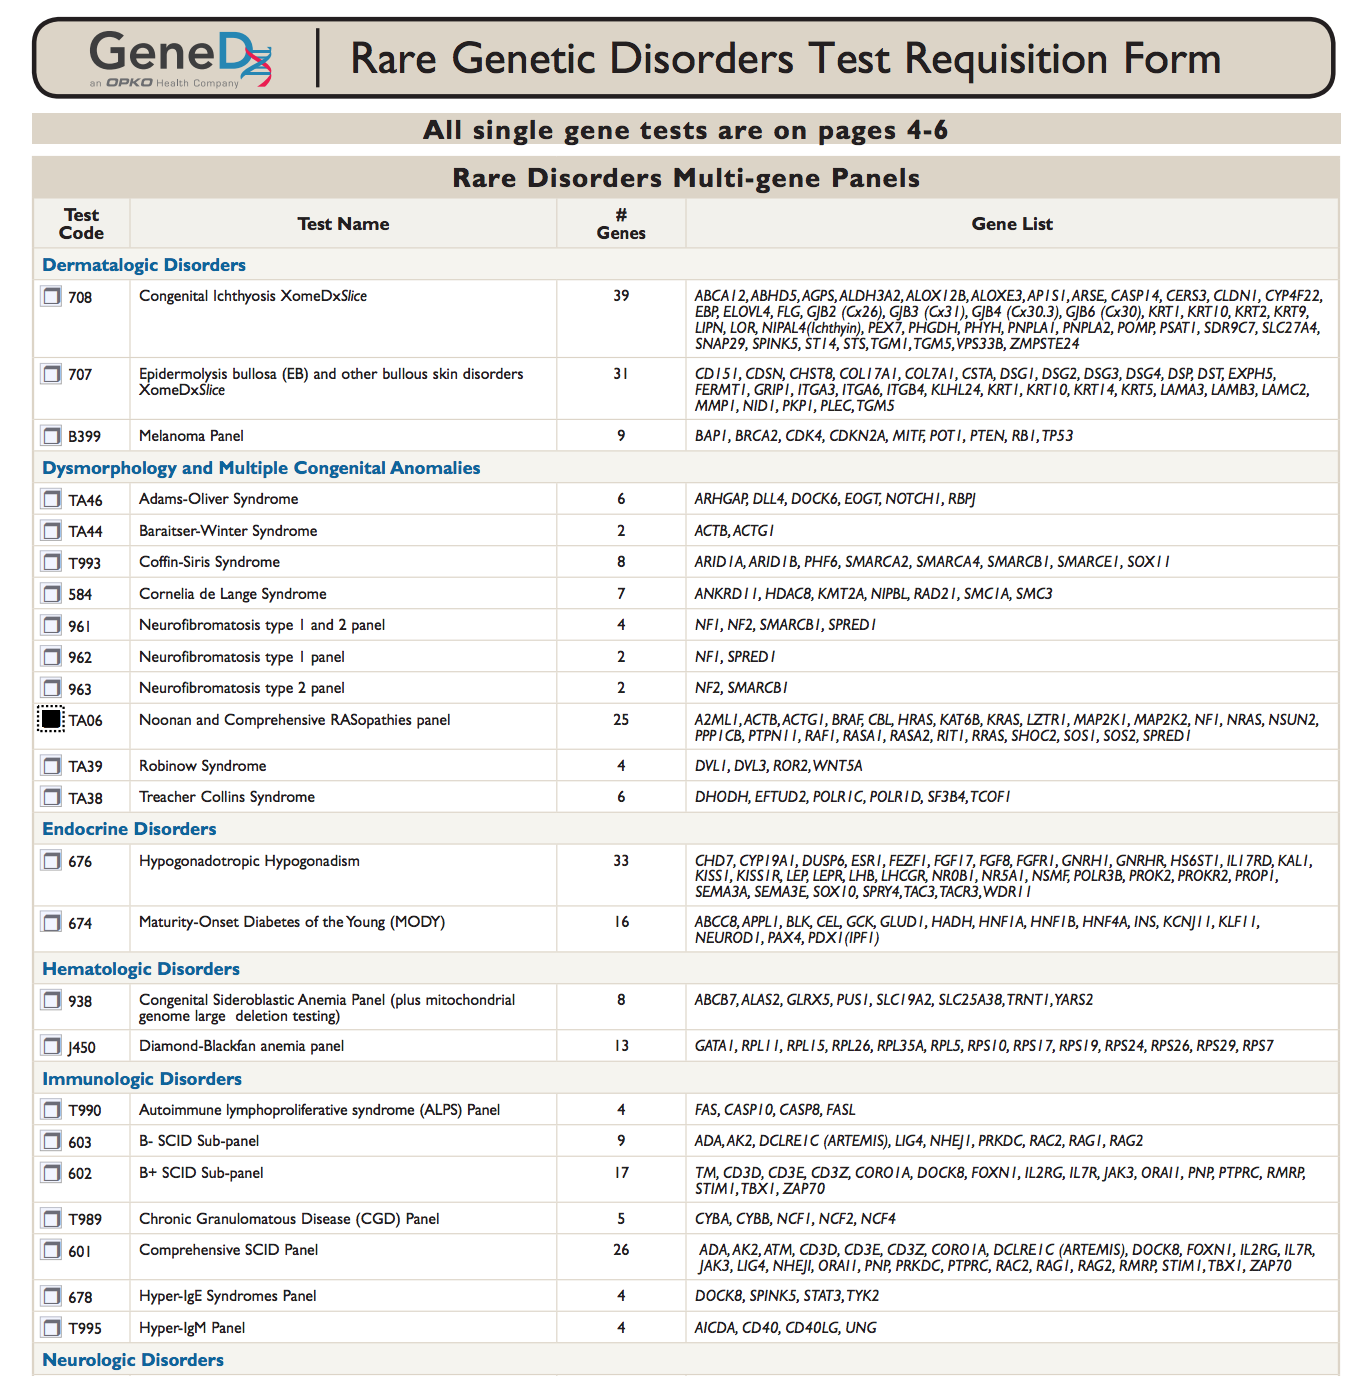 Tabela com listas com testes, seus códigos, nomes, número de genes onde a condição testada é encontrada e a lista desses genes